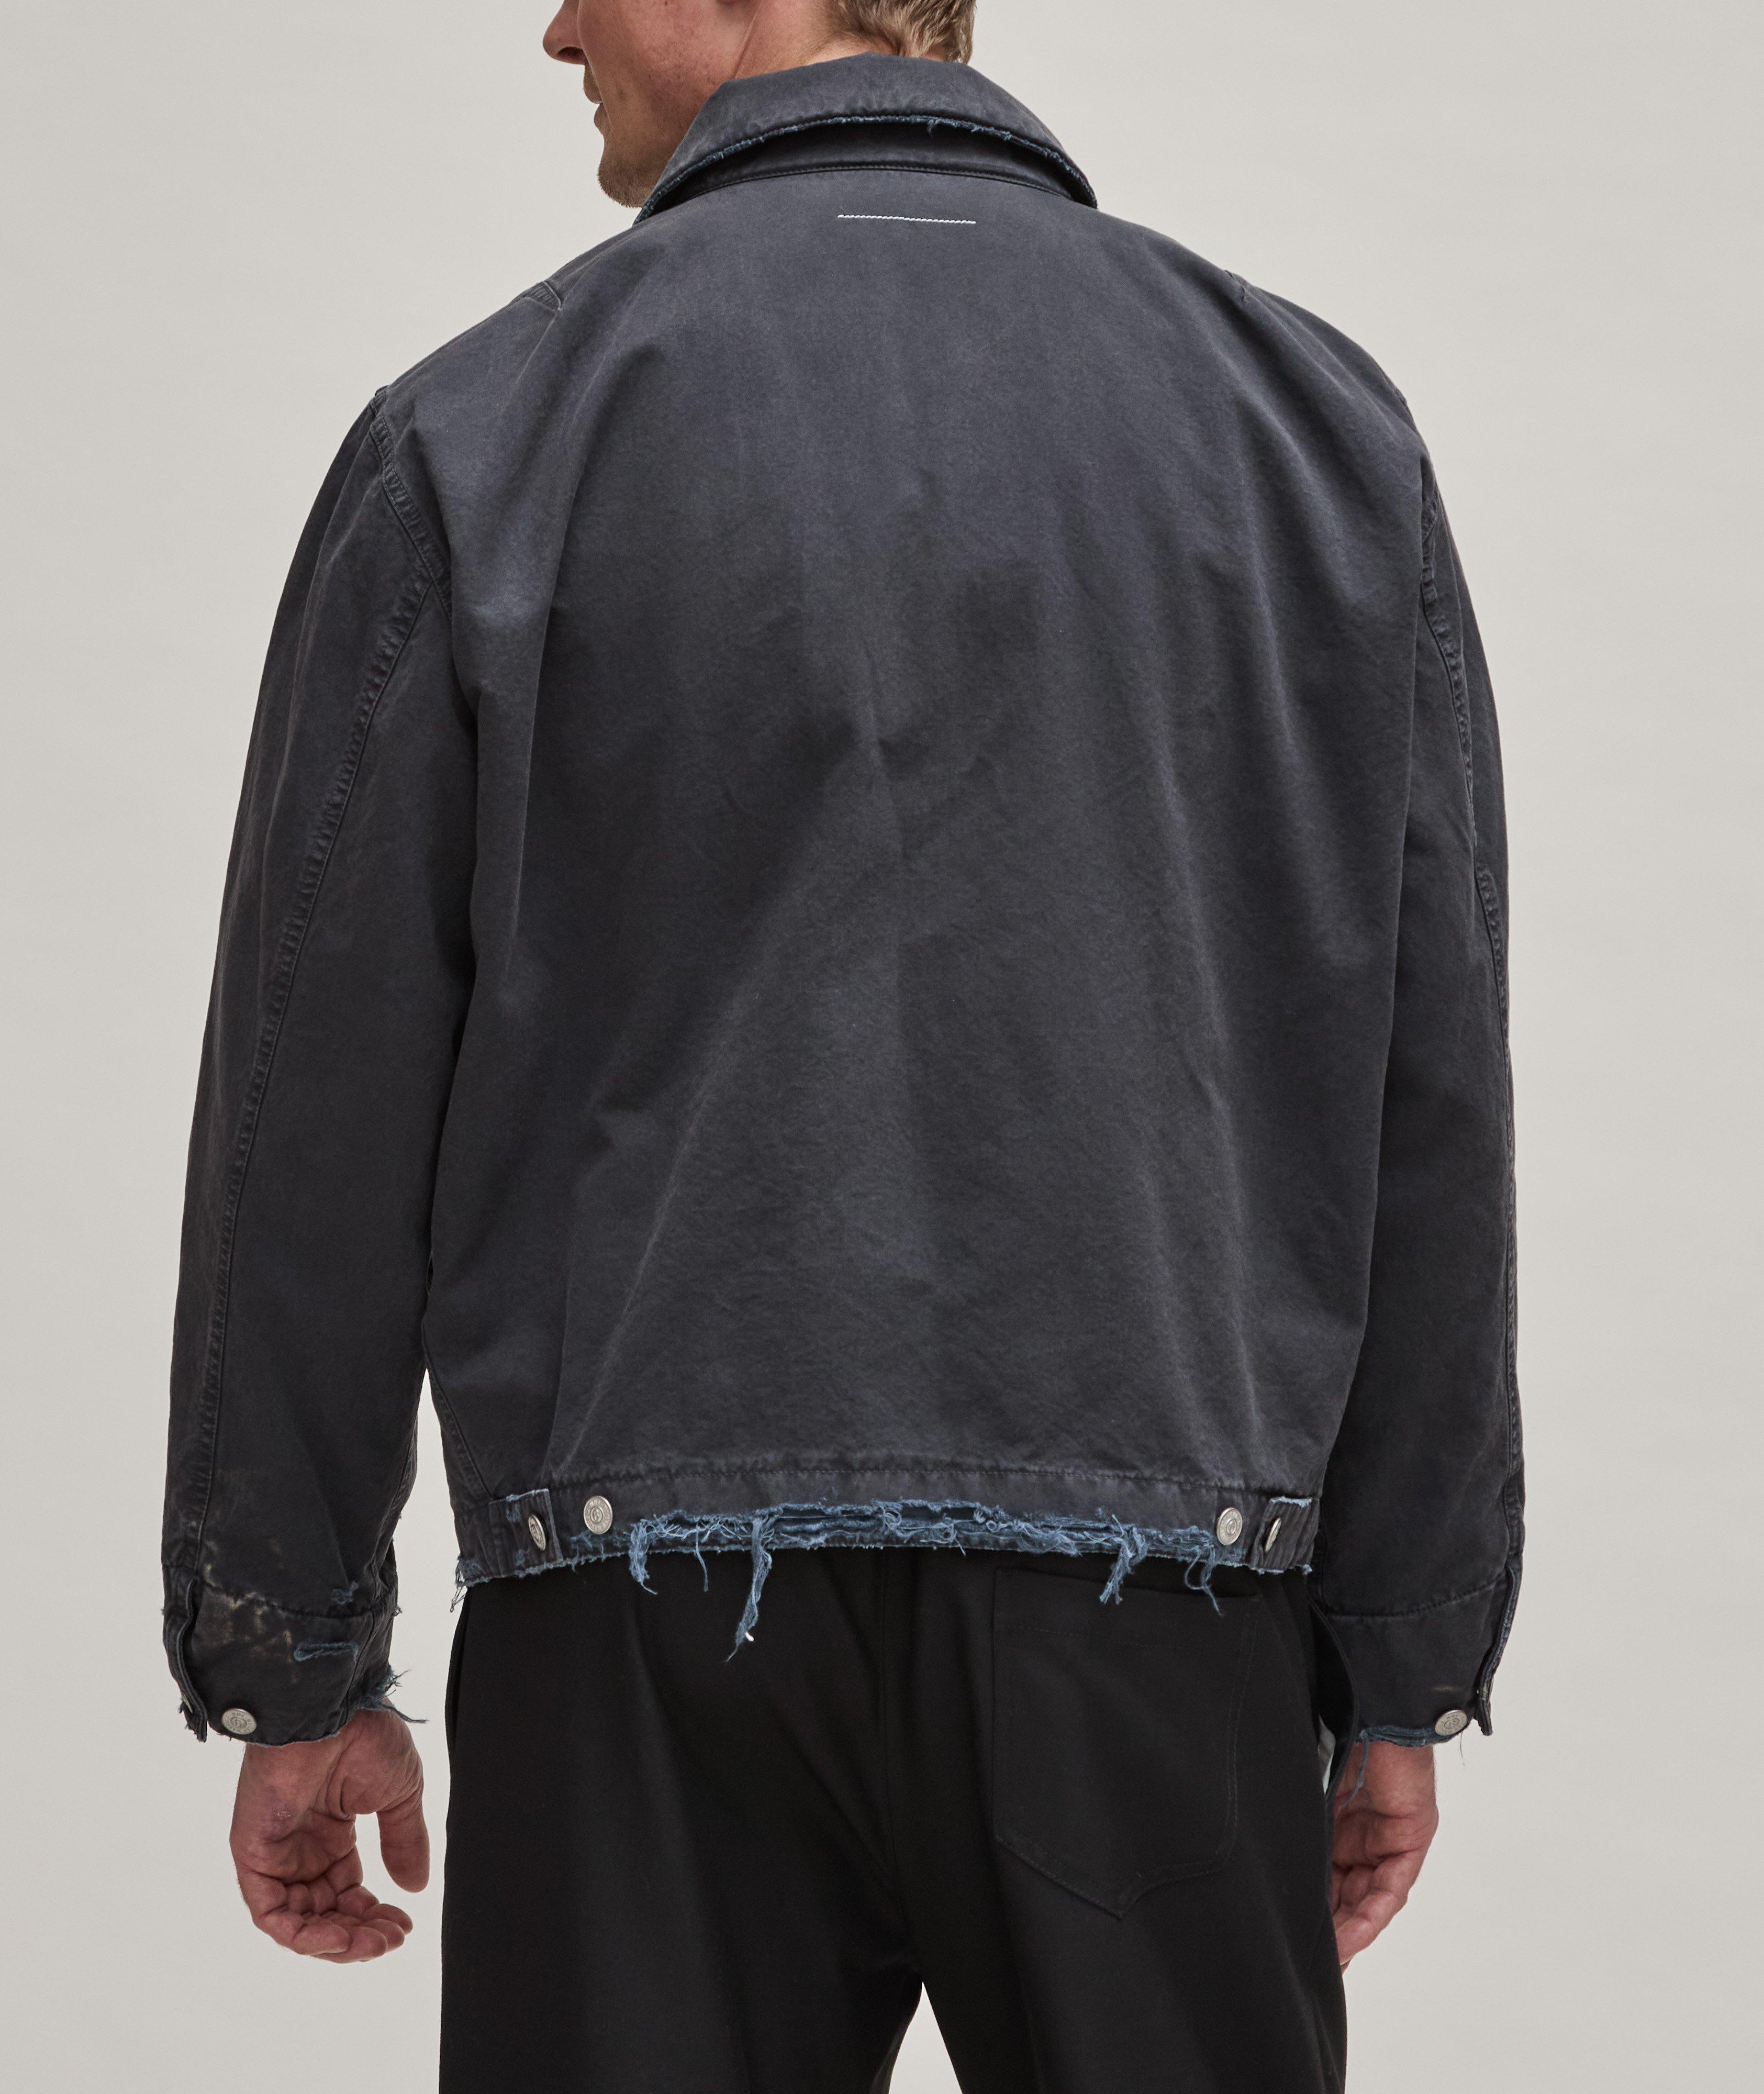 Frayed Cotton Jacket With Interior Padding  image 2